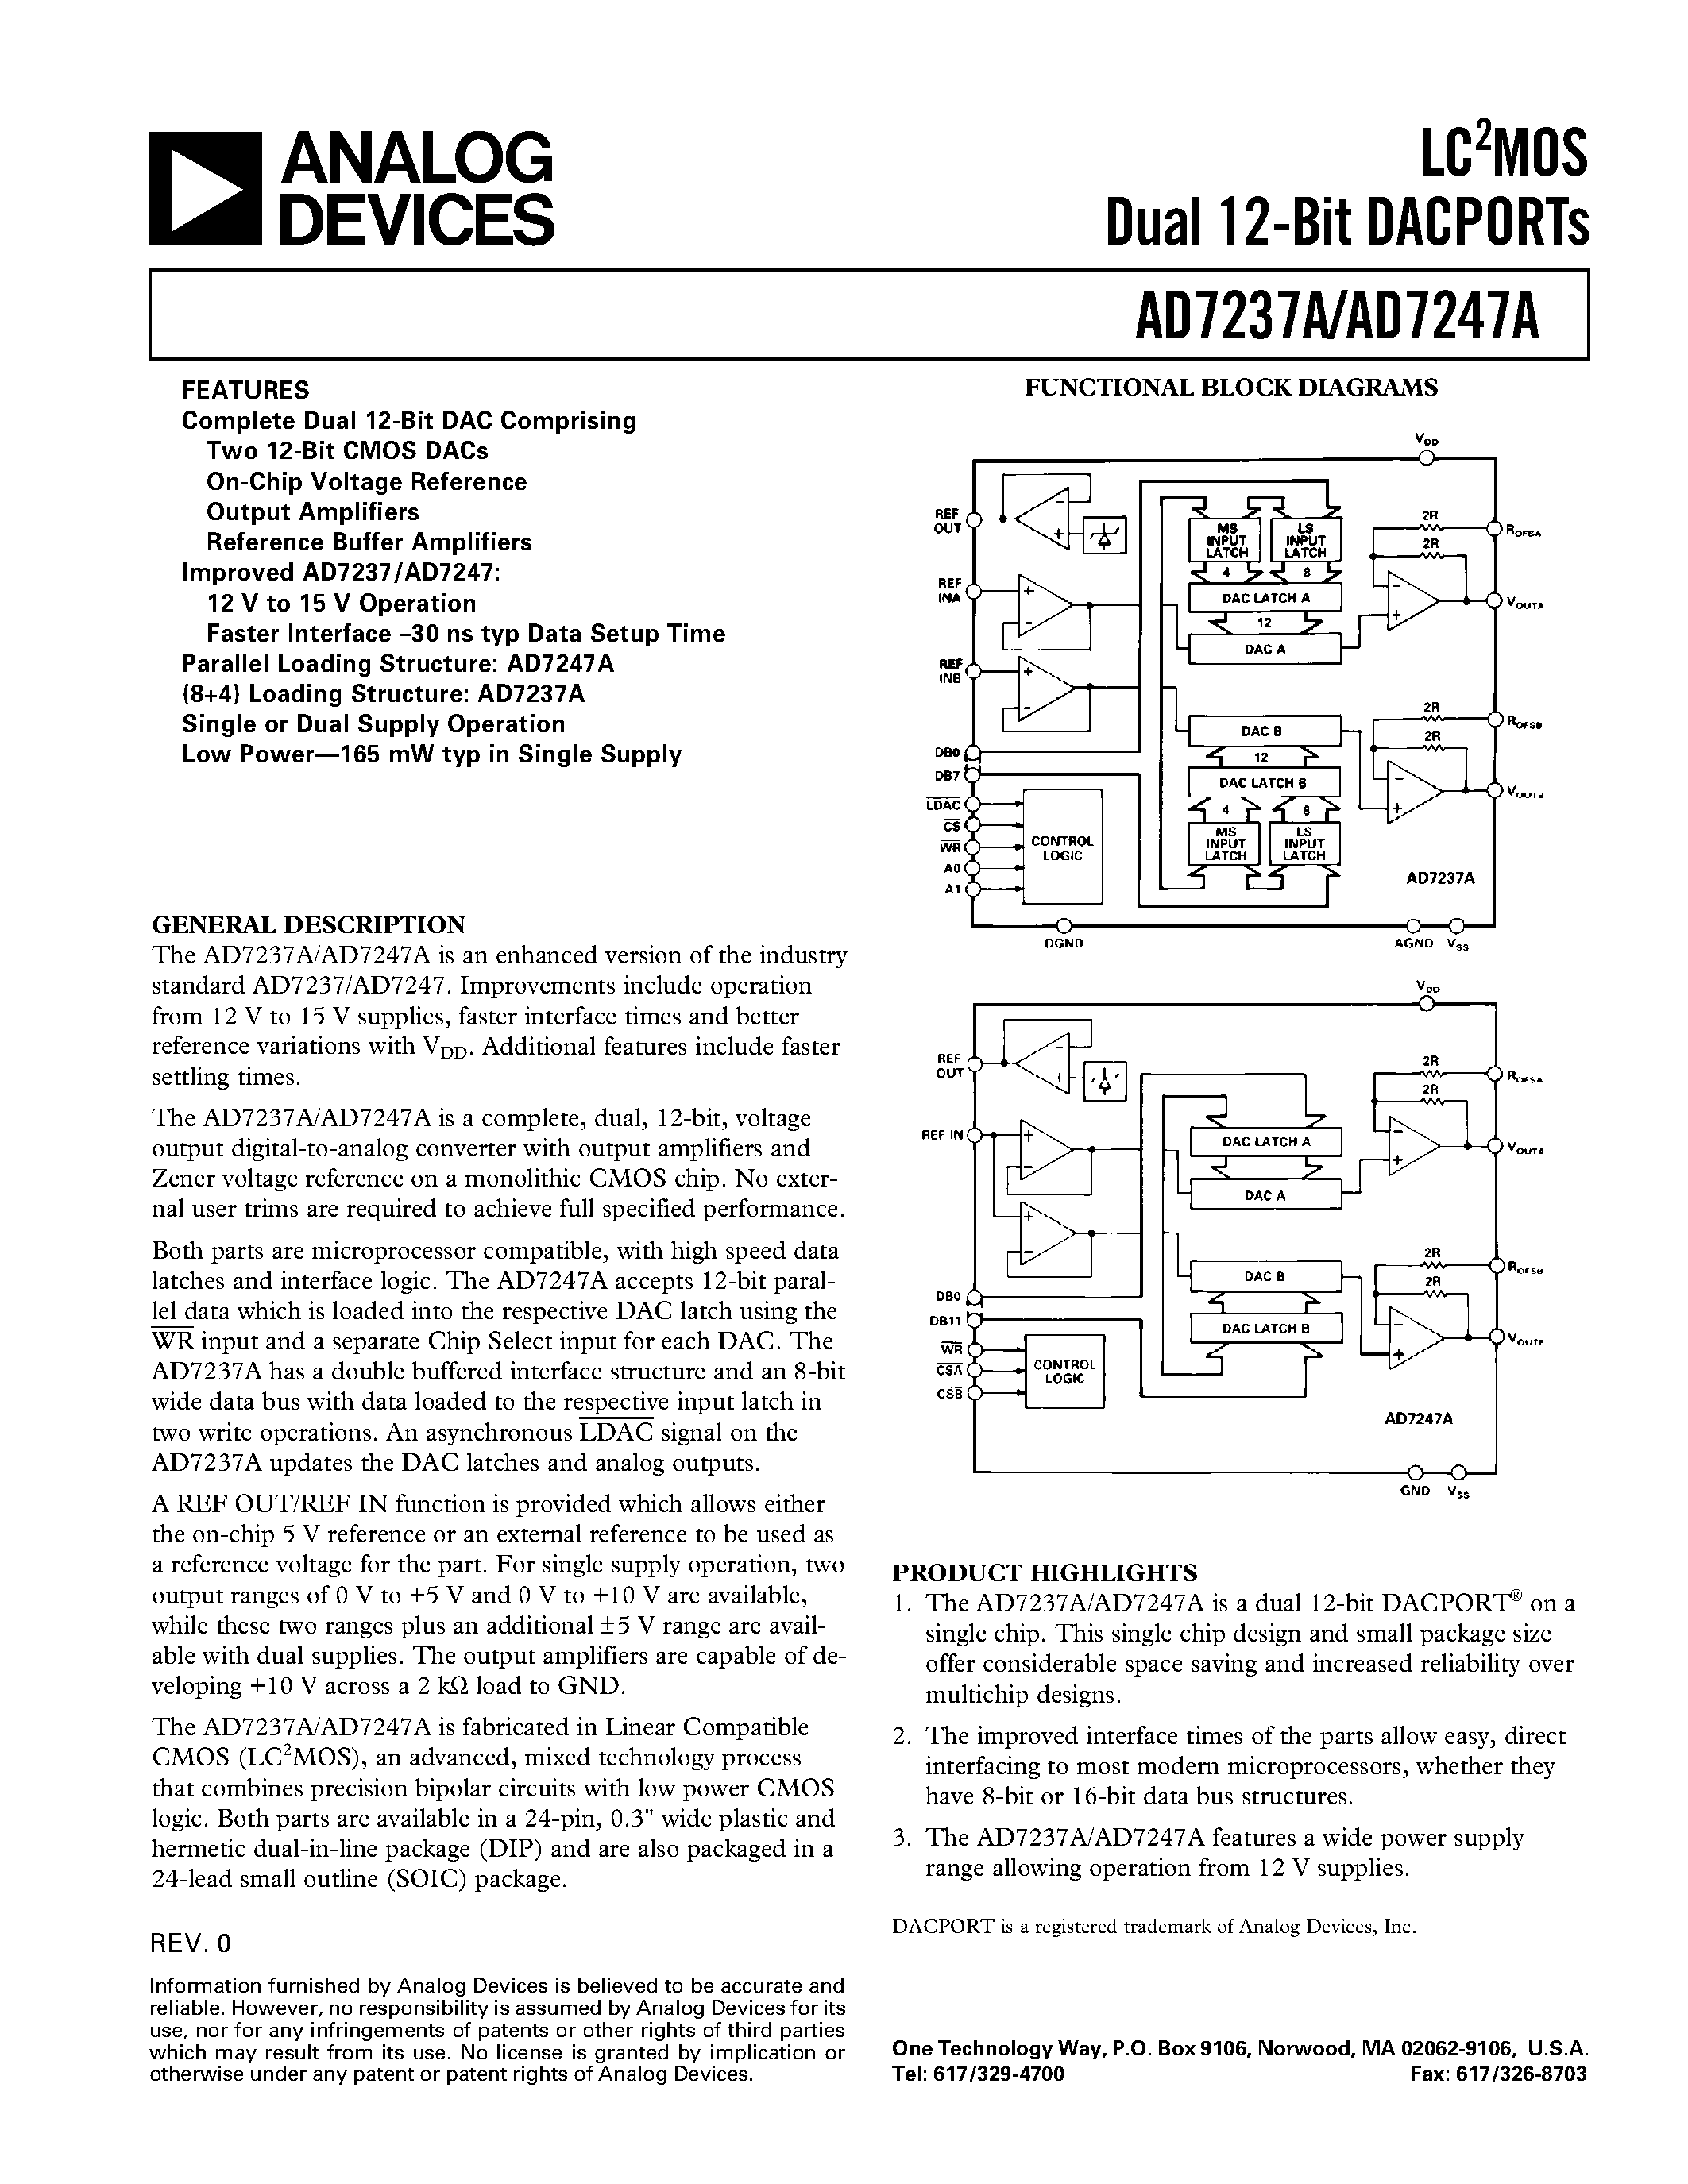 Даташит AD7247AAR - LC2MOS Dual 12-Bit DACPORTs страница 1